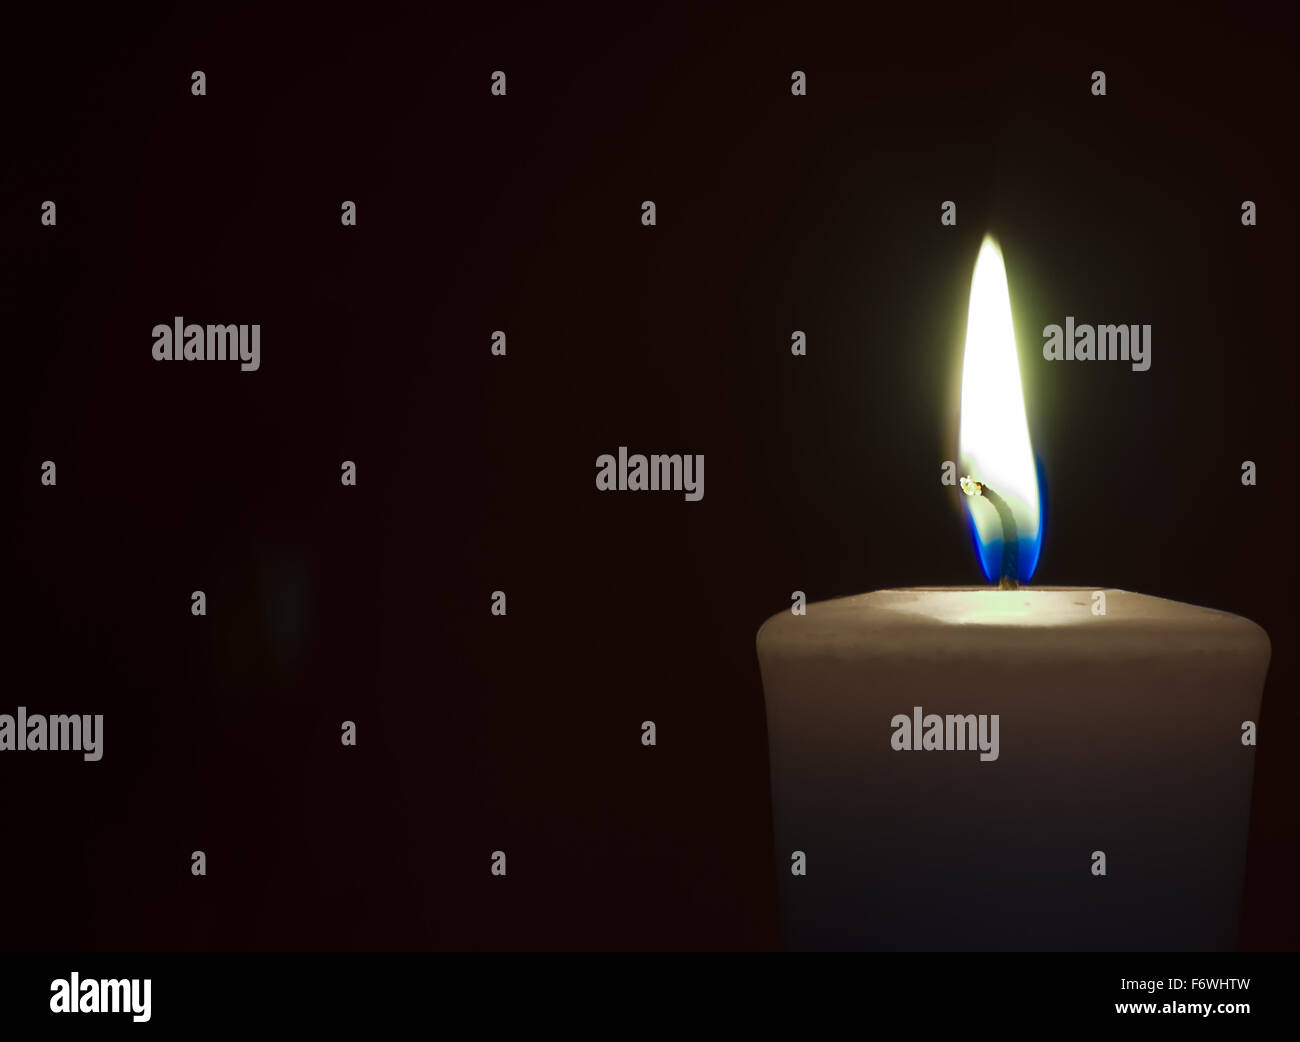 Isolate burning candle on dark background Stock Photo